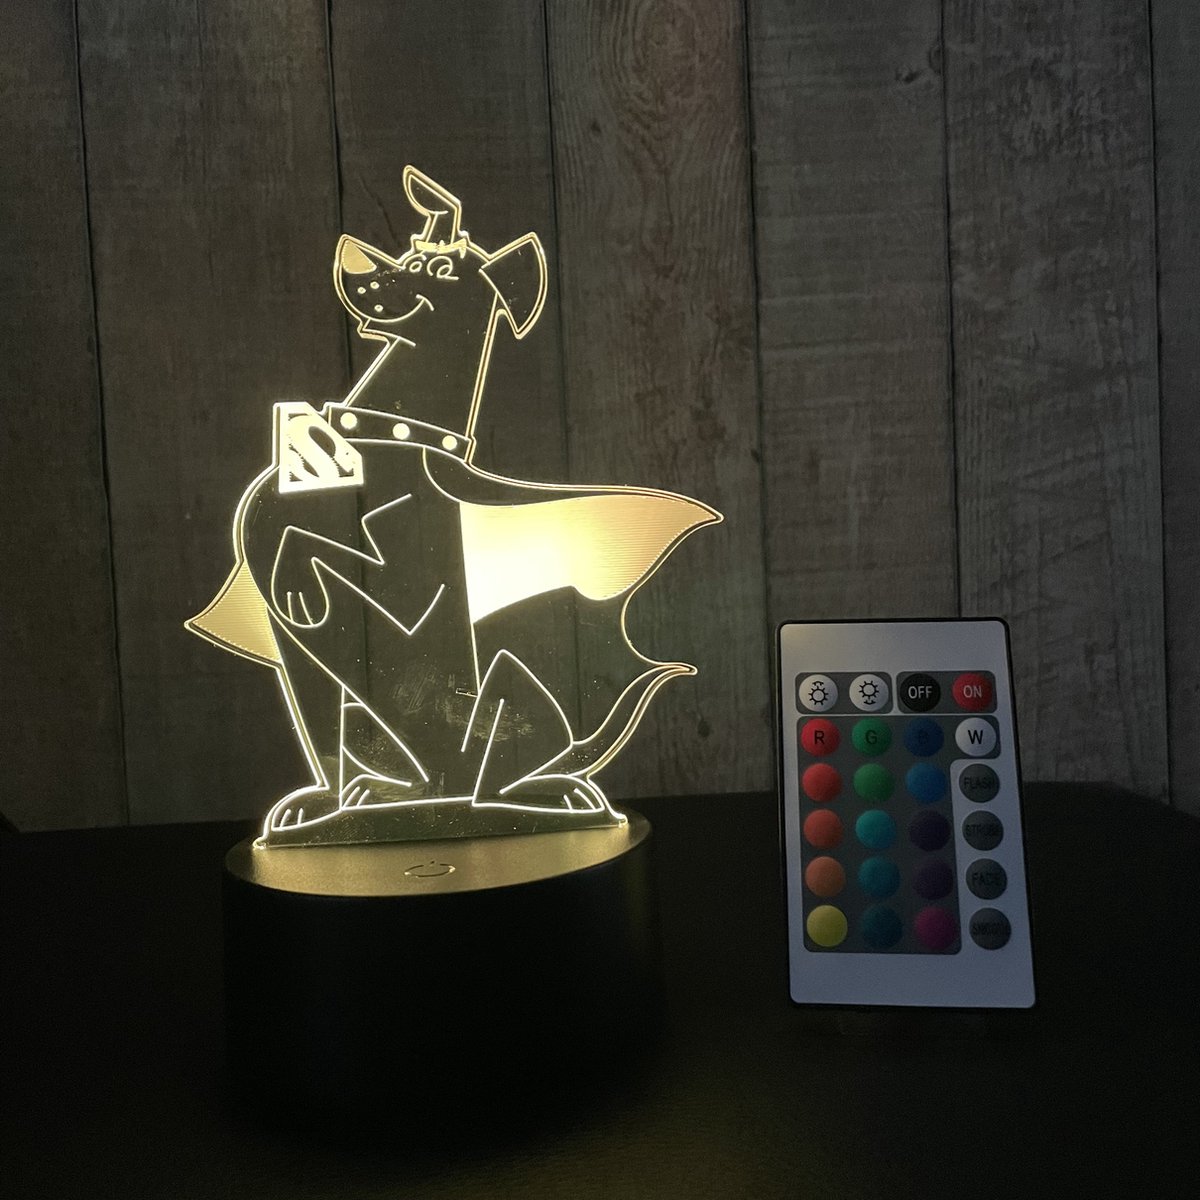 Klarigo® Nachtlamp – 3D LED Lamp Illusie – Krypto - DC club van Superpets - 16 Kleuren – Bureaulamp – Sfeerlamp – Nachtlampje Kinderen – Creative - Afstandsbediening